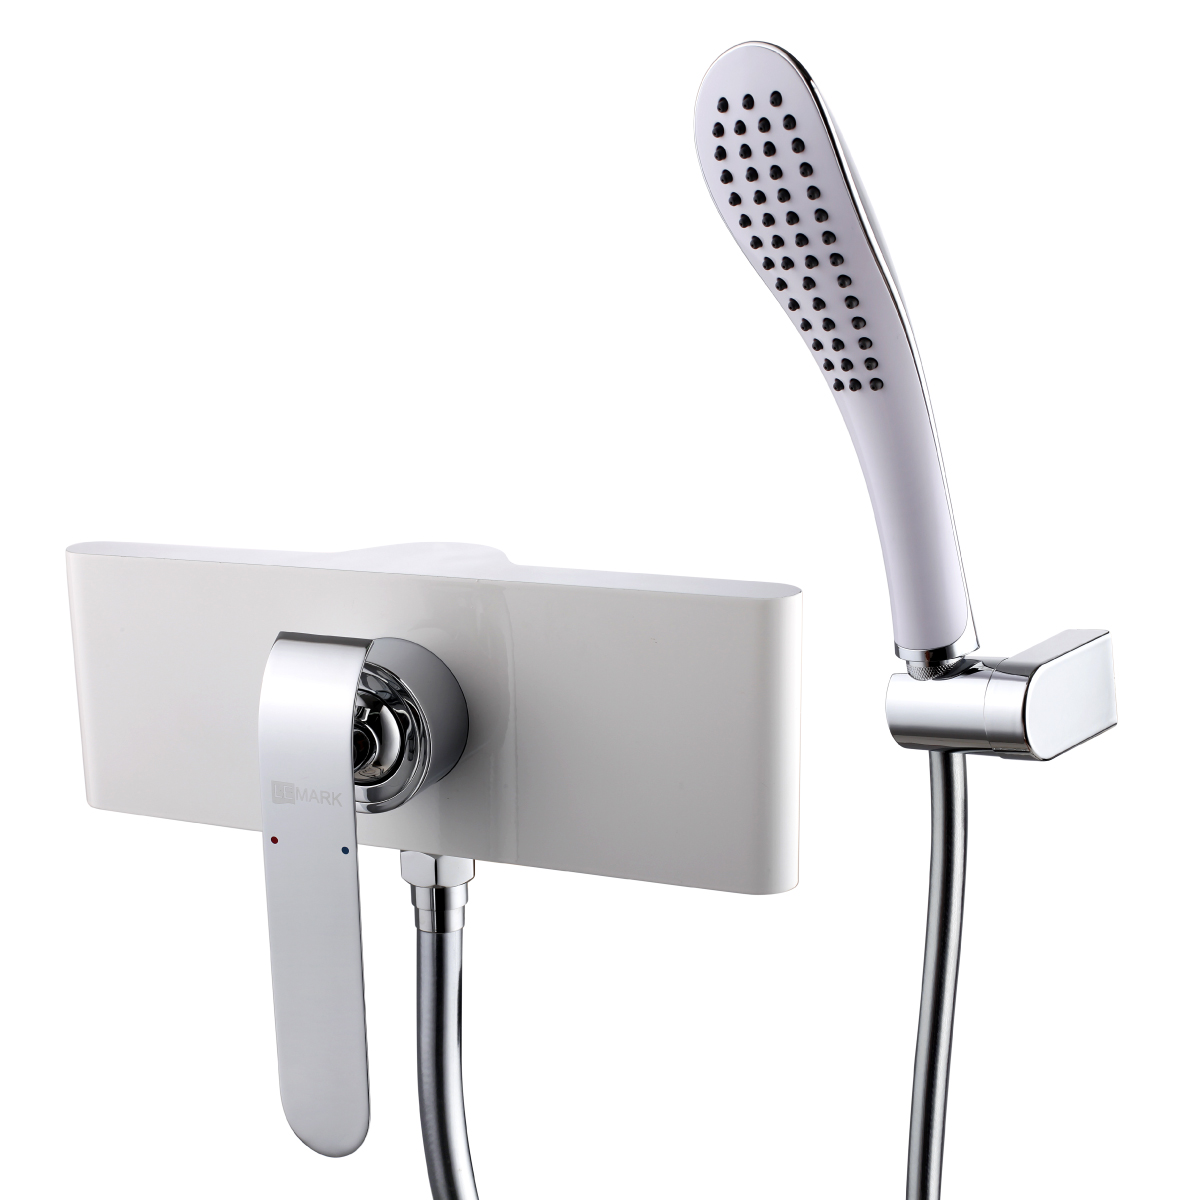 LM4903CW Shower faucet